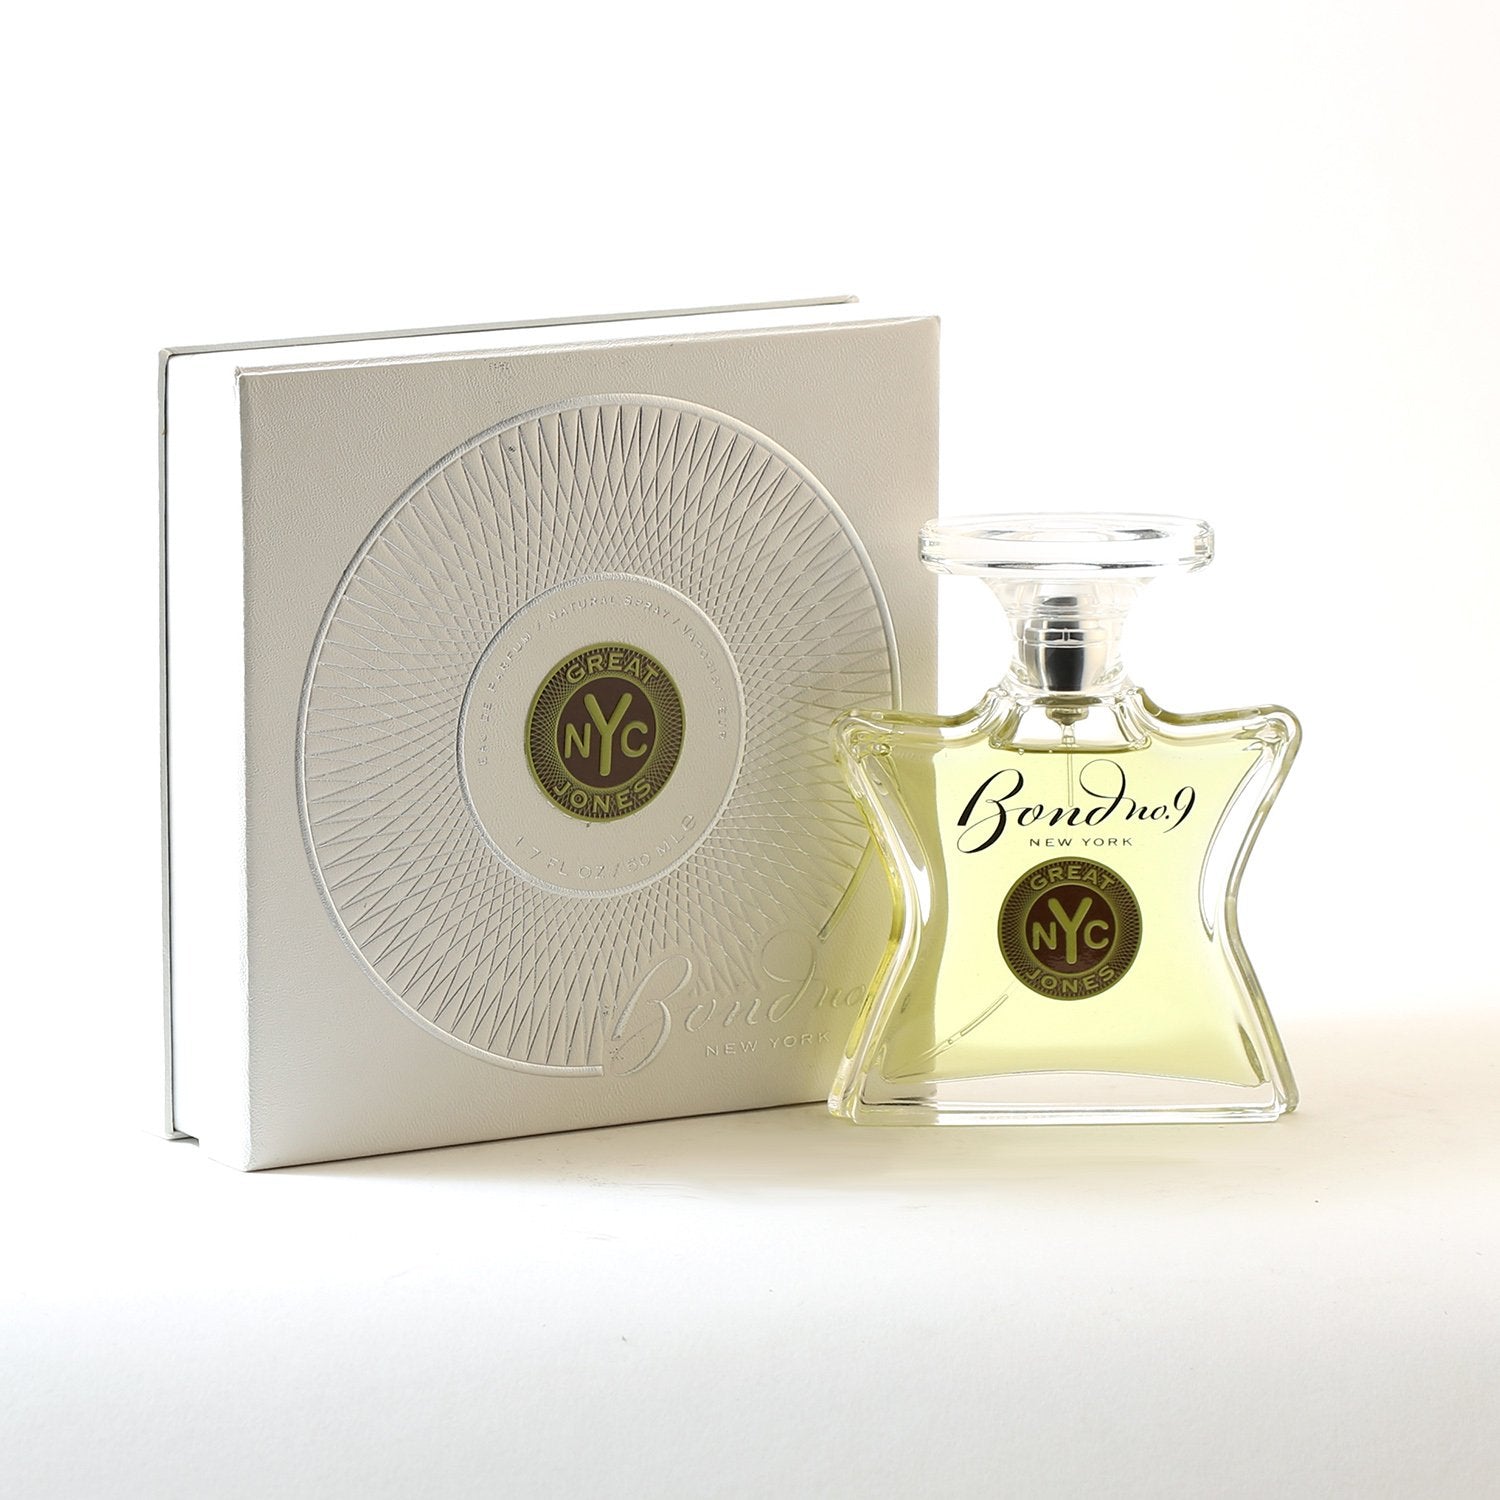 BOND NO 9 GREAT JONES FOR MEN -EAU DE PARFUM 1.7 – Fragrance